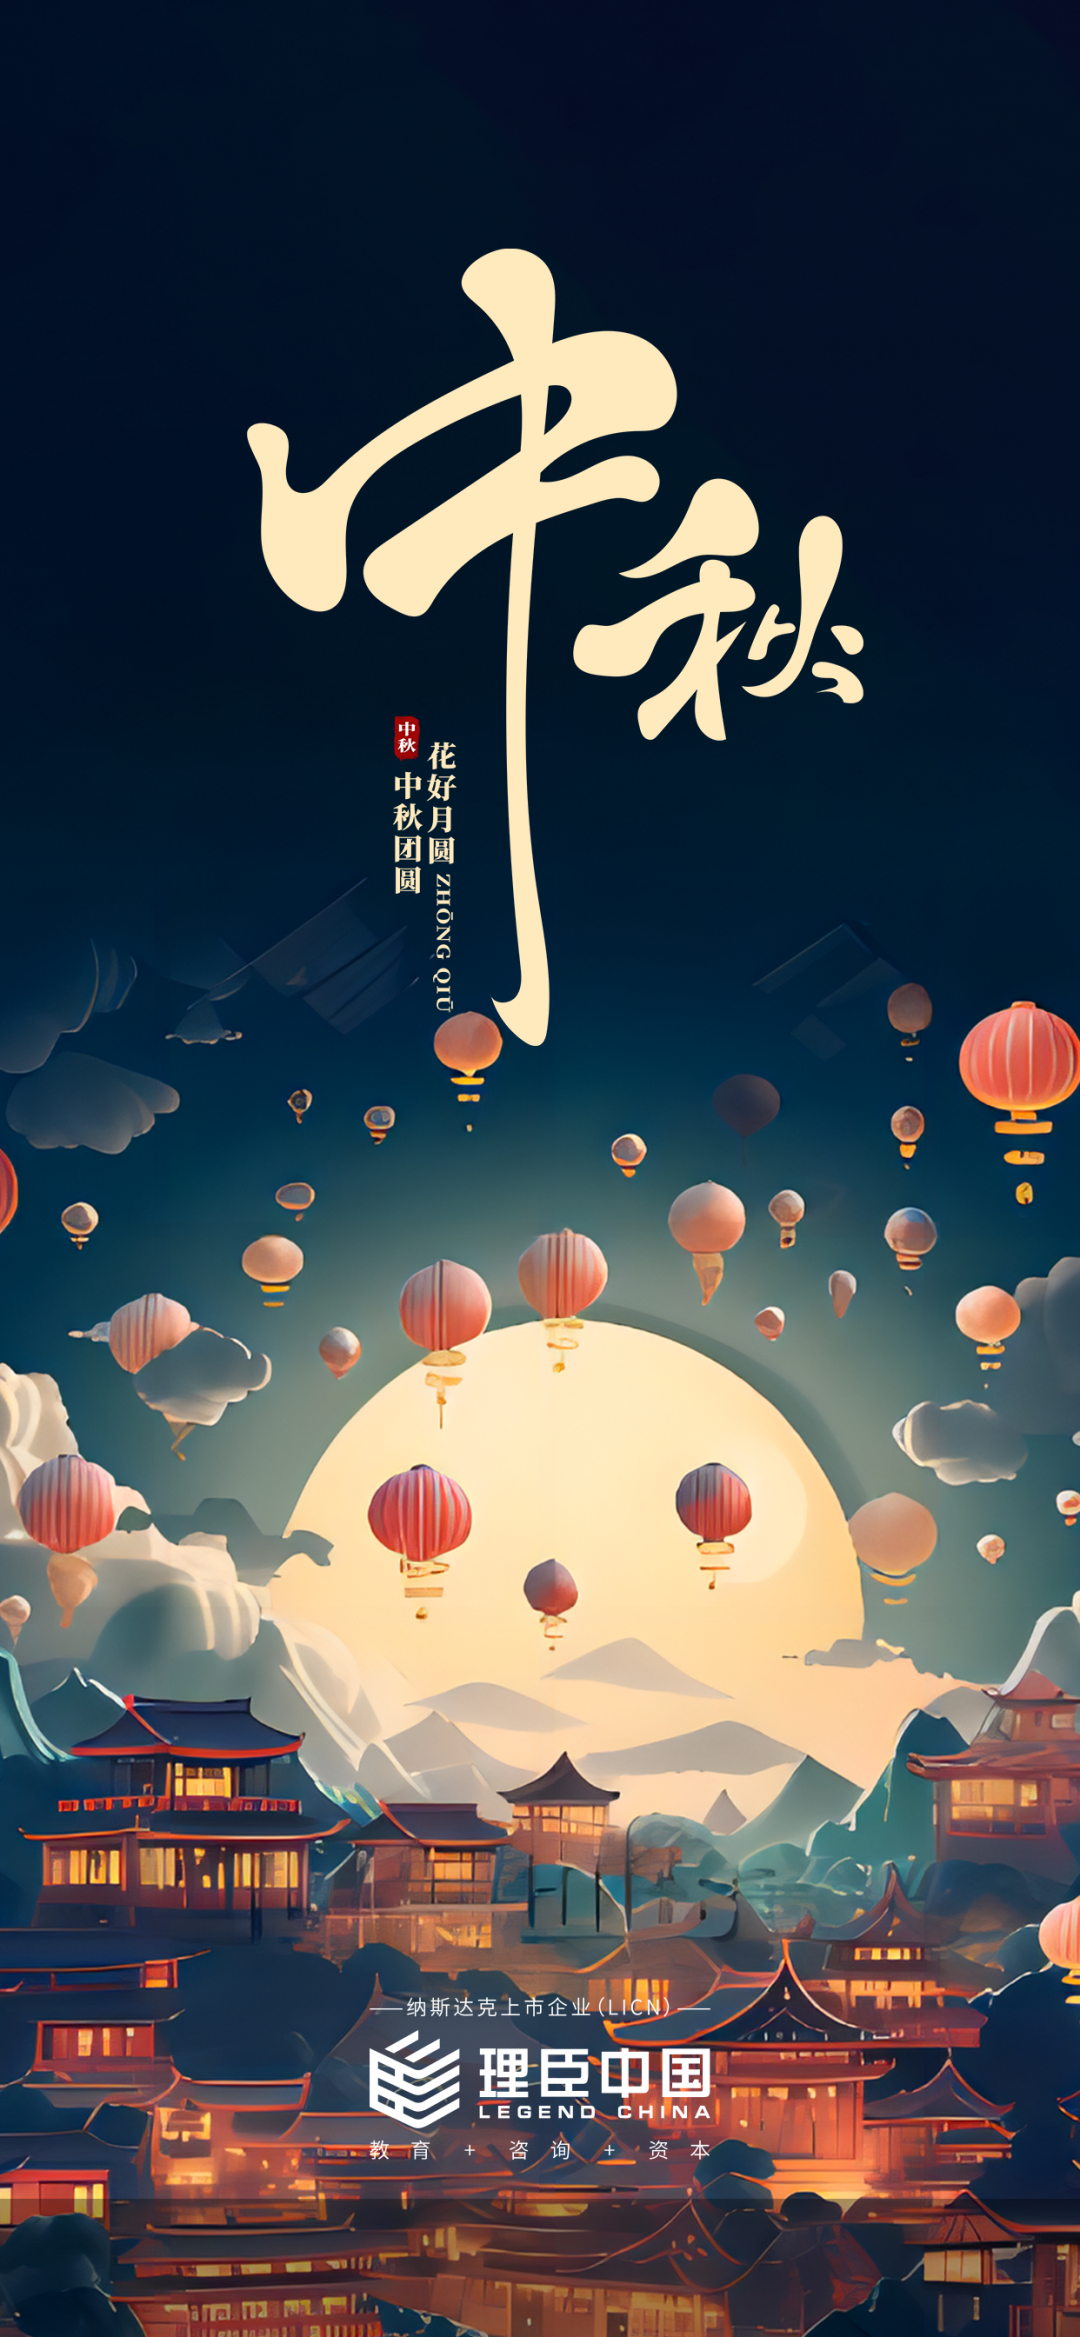 中秋节丨月光拨云层 人间共团圆